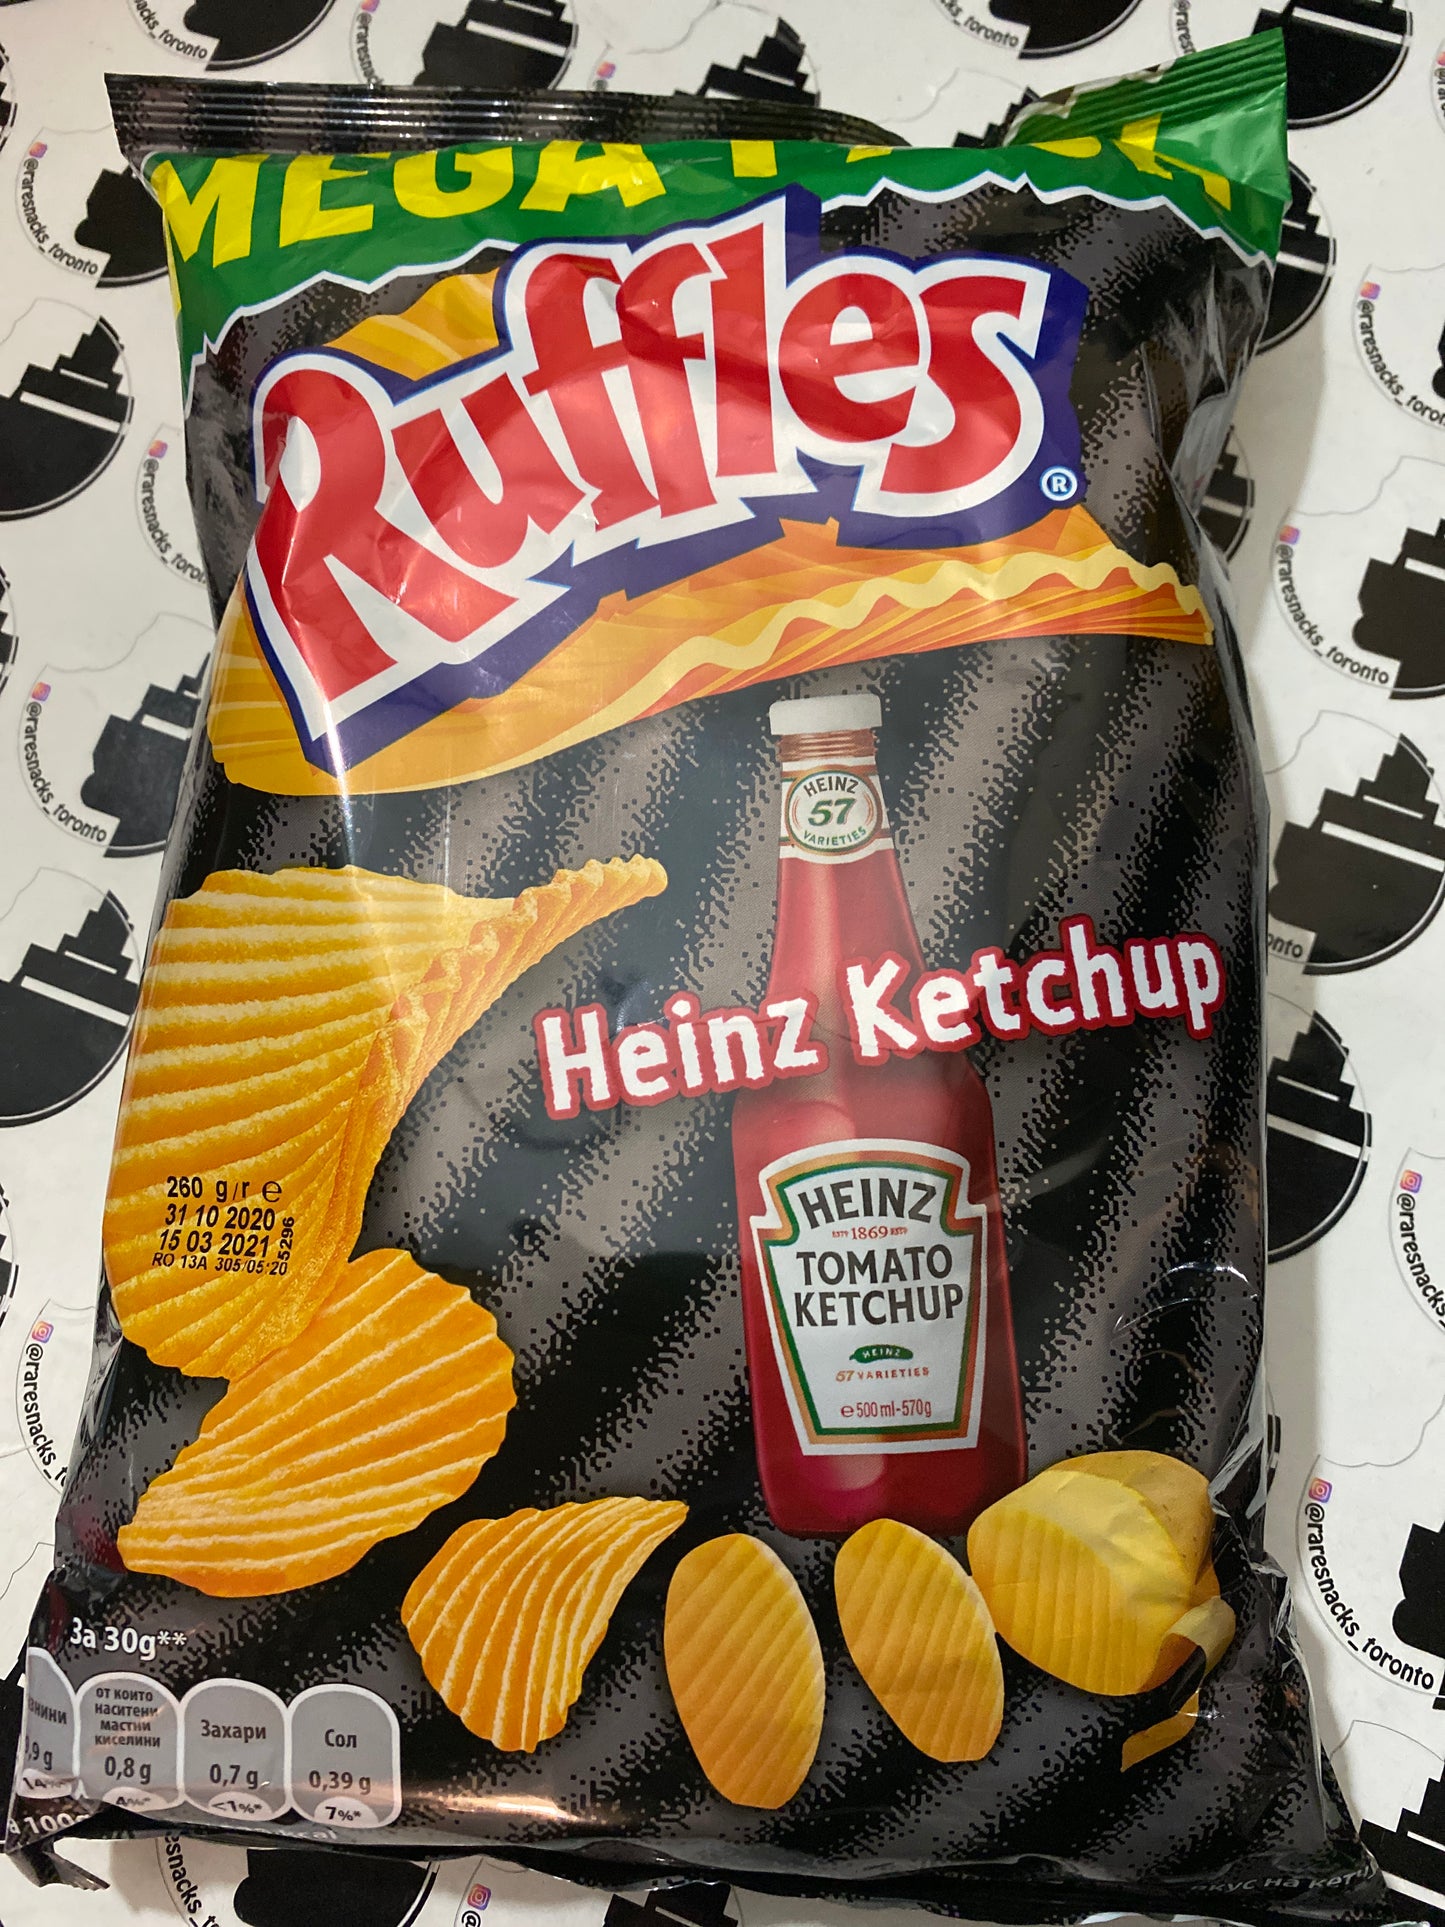 Ruffles Heinz Ketchup Mega Pack 260g